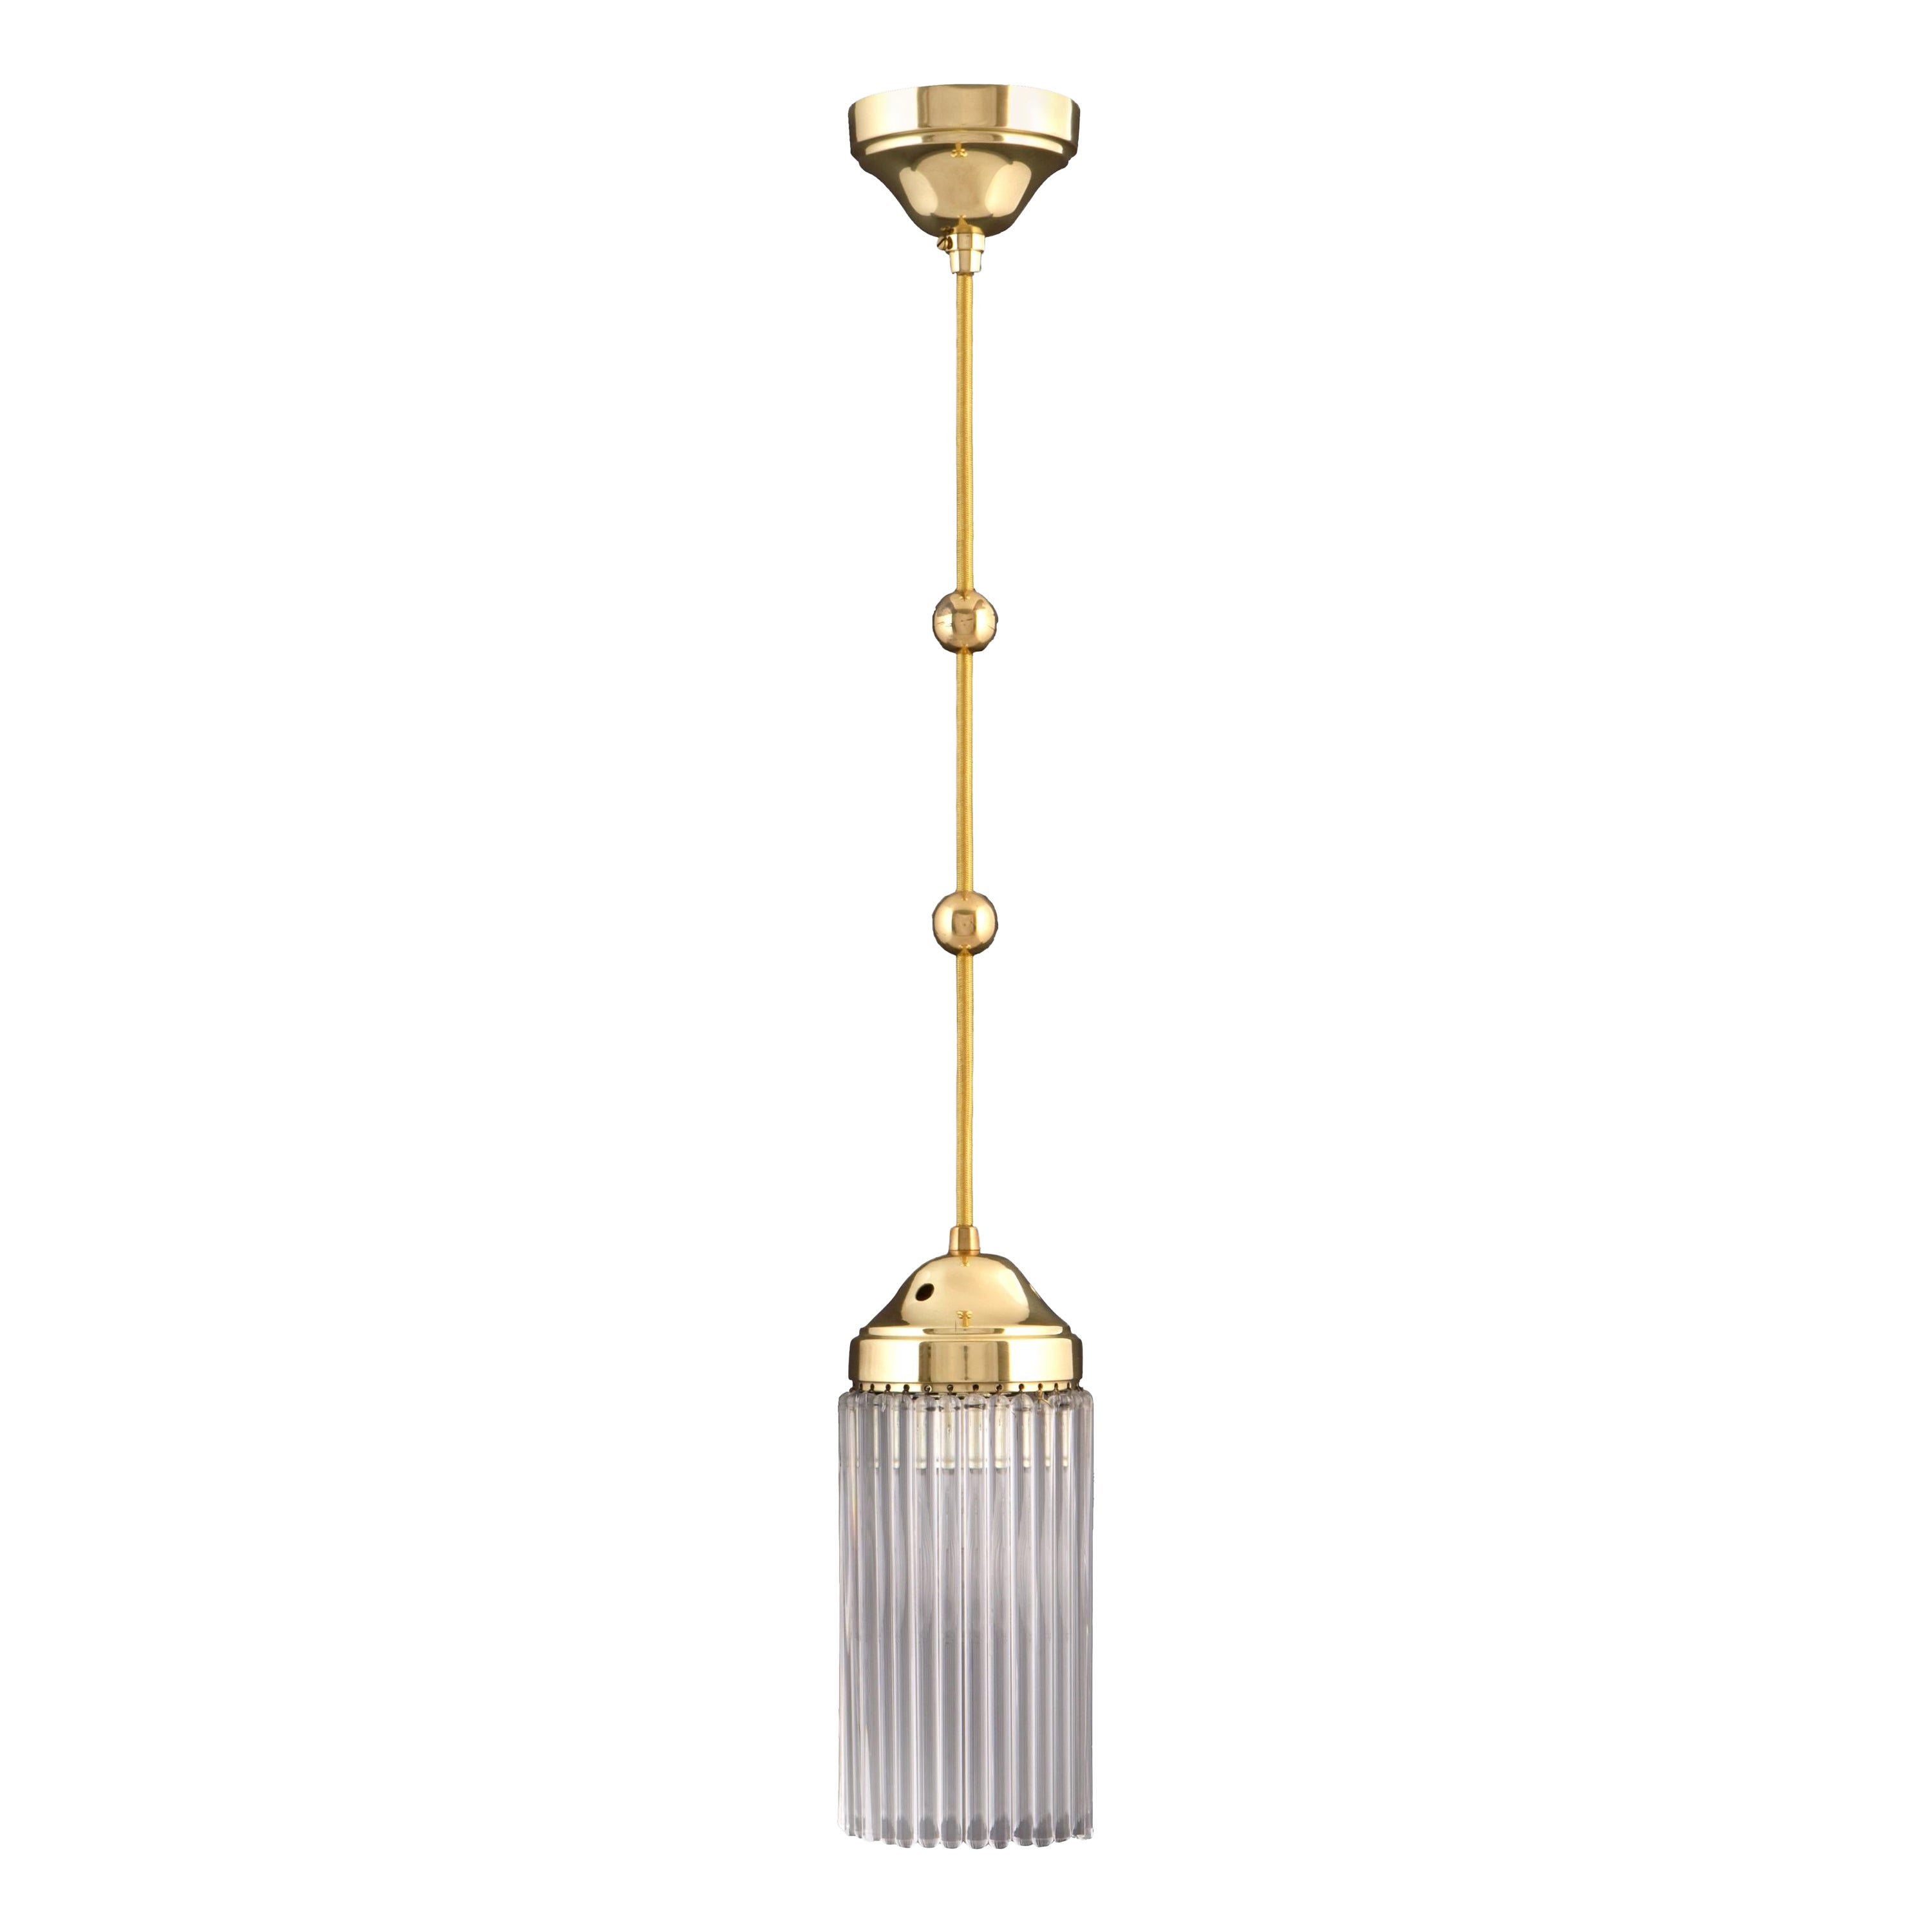 Jugendstil  Art Deco Brass and Glass Single Pendant Chandelier, Re-Edition For Sale